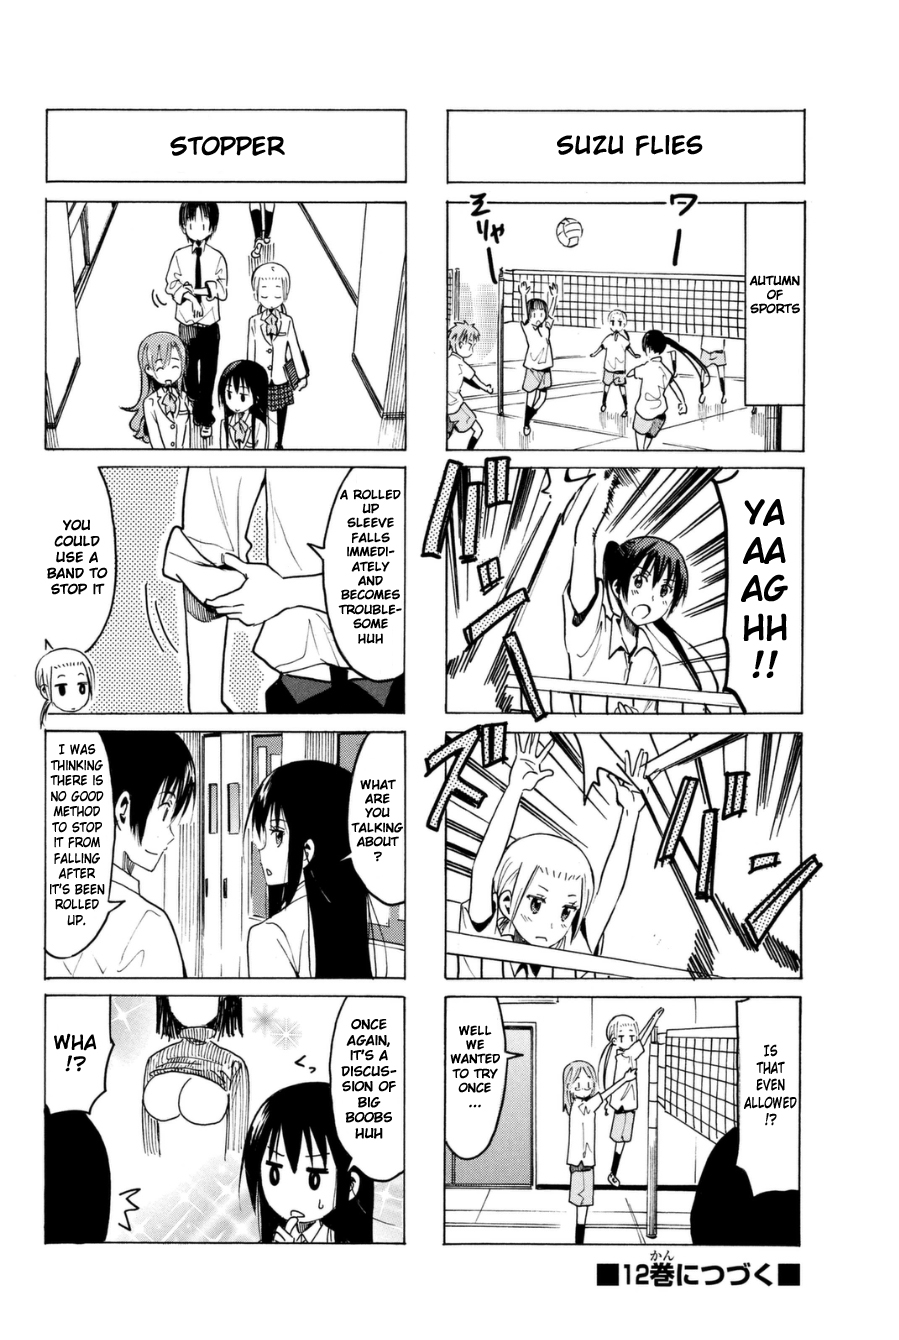 Seitokai Yakuindomo Vol.11 Ch.301